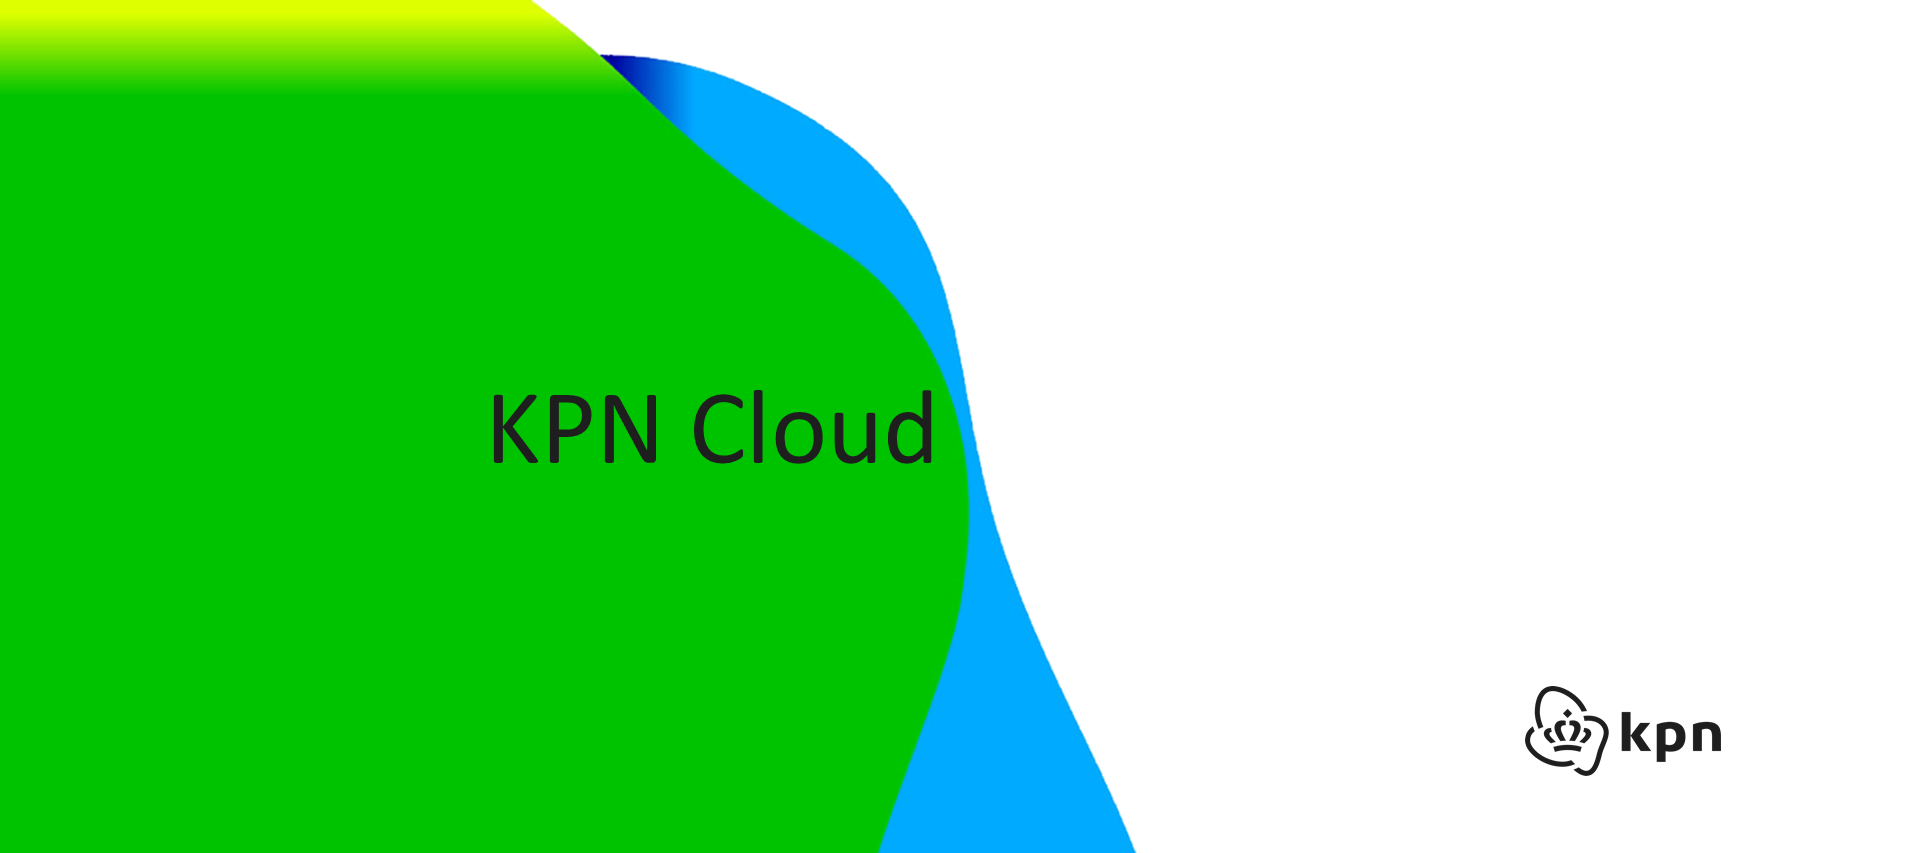 KPN Cloud